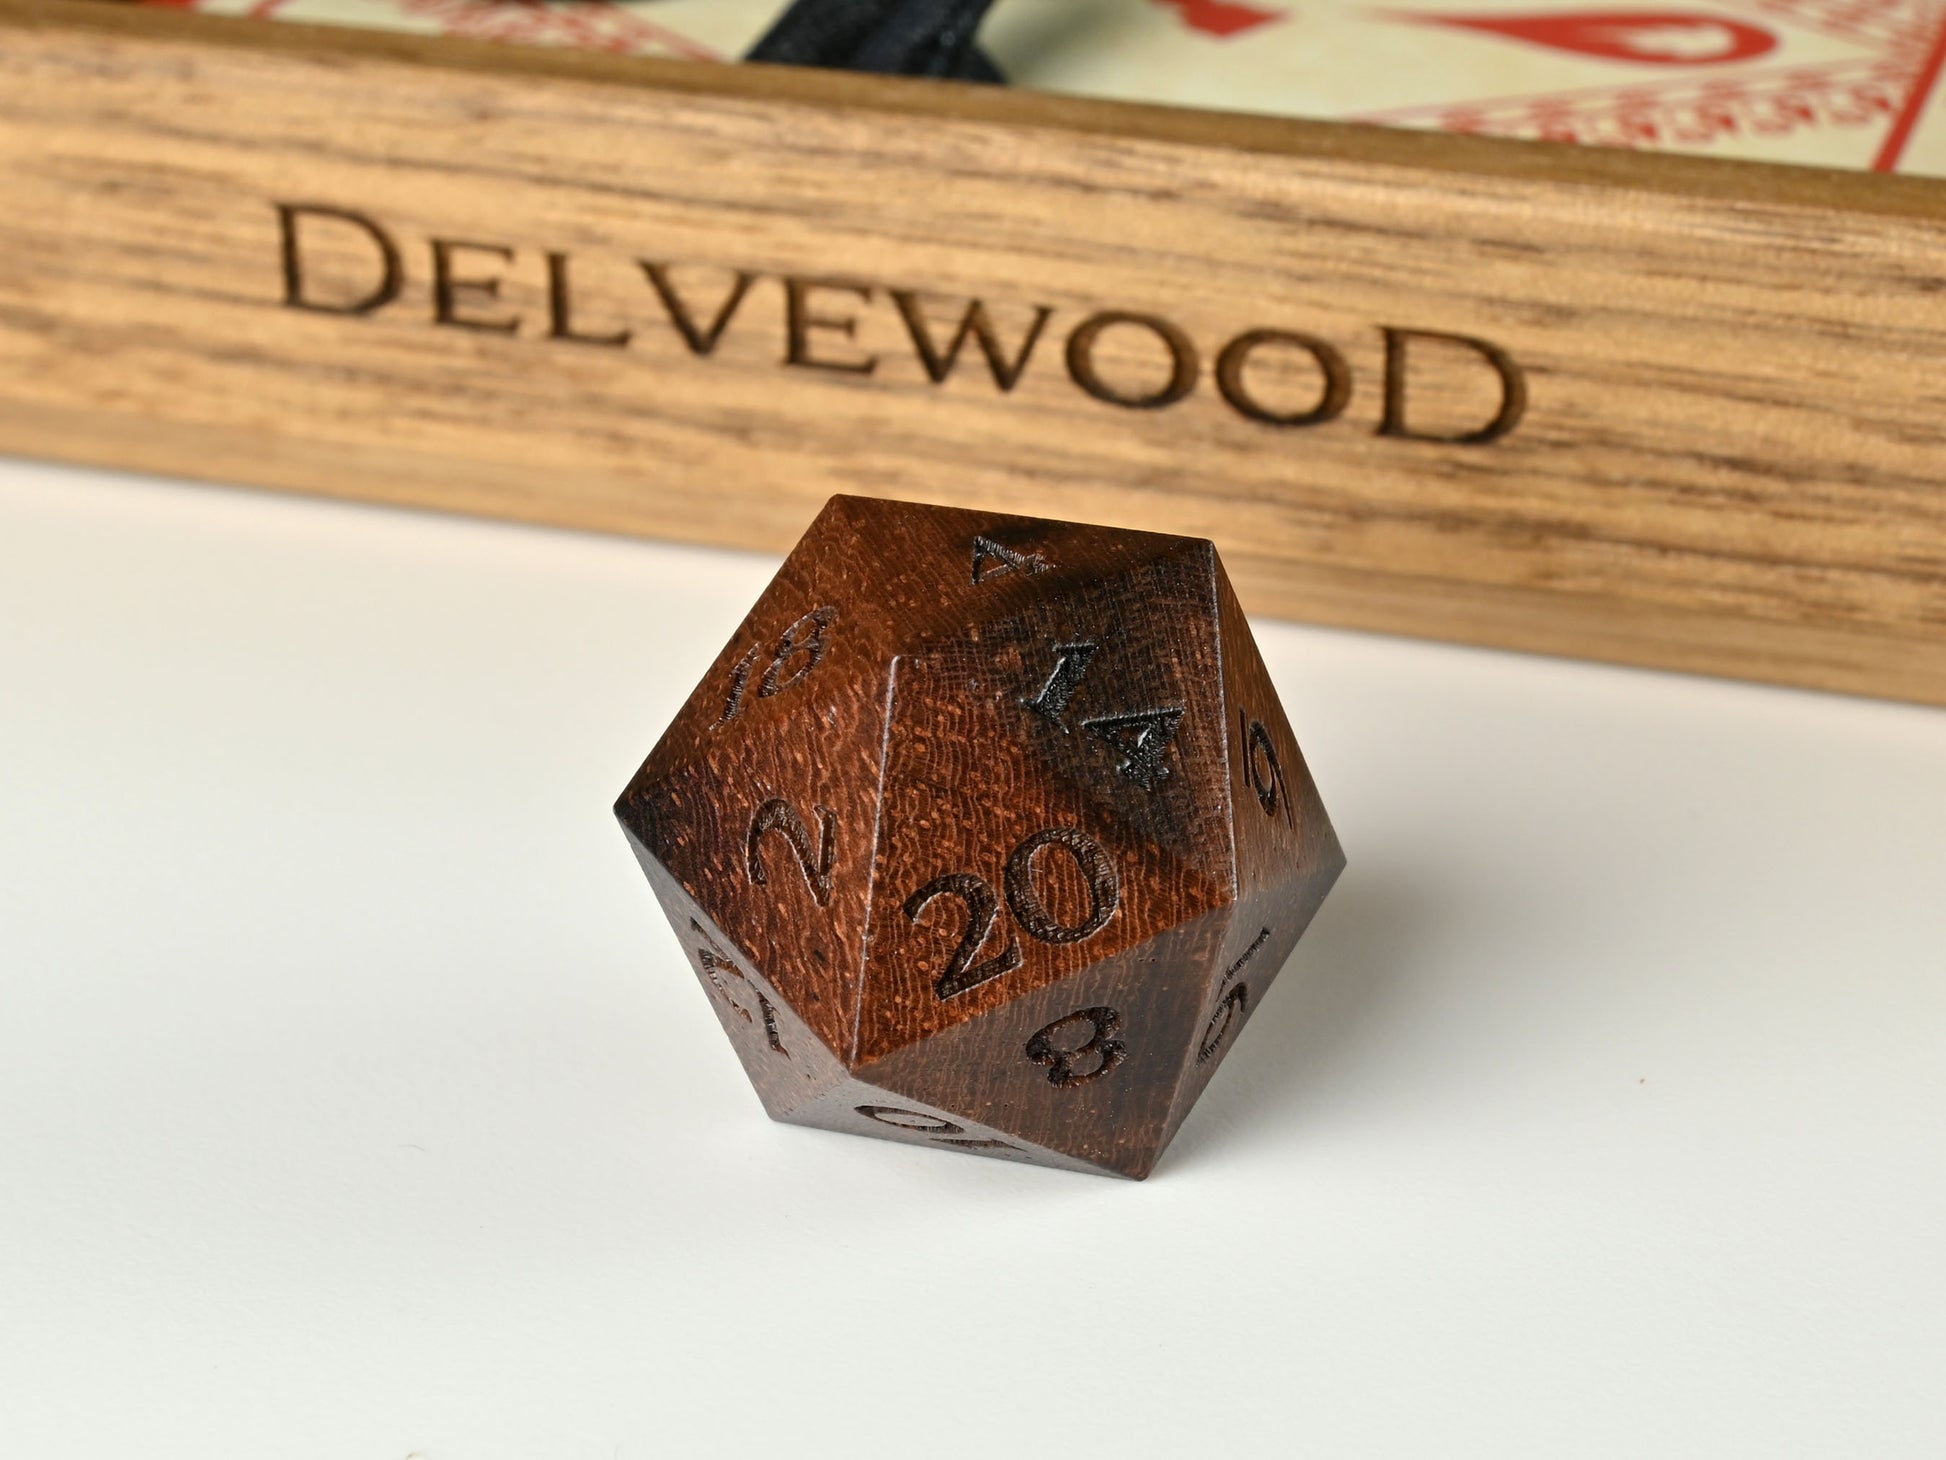 Katalox wood D20 dice